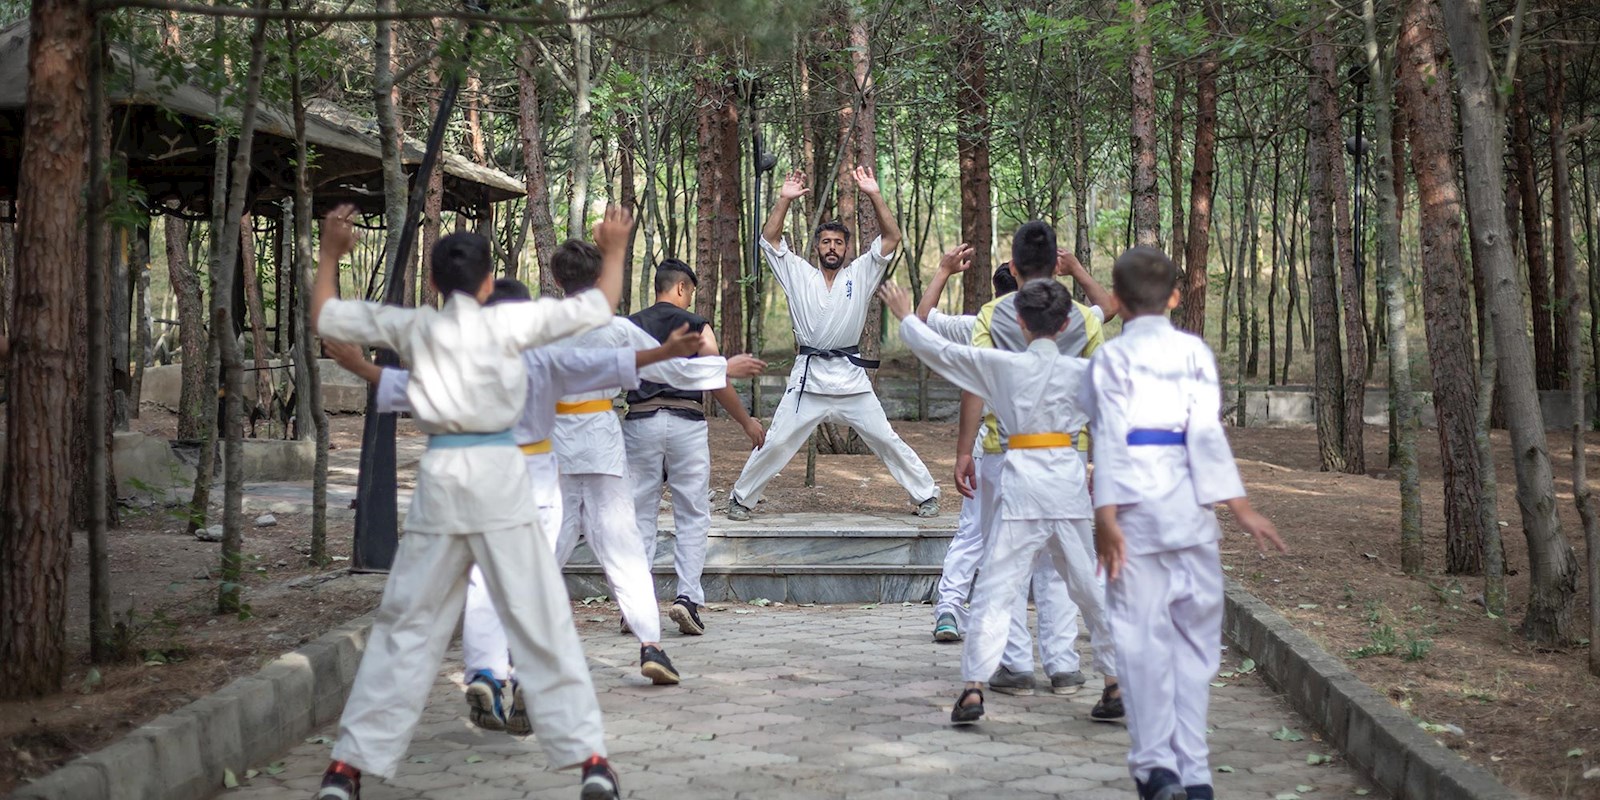 نزدیک به 18 ماه است که سالن های ورزشی شهرستان که هیچ بلکه تمام اردبیل بدلیل شیوع کرونا تعطیل می‌باشد و حسن که مربی ورزش رزمی کیوکوشین کاراته است، شاگردانش را در پارک آموزش میدهد.